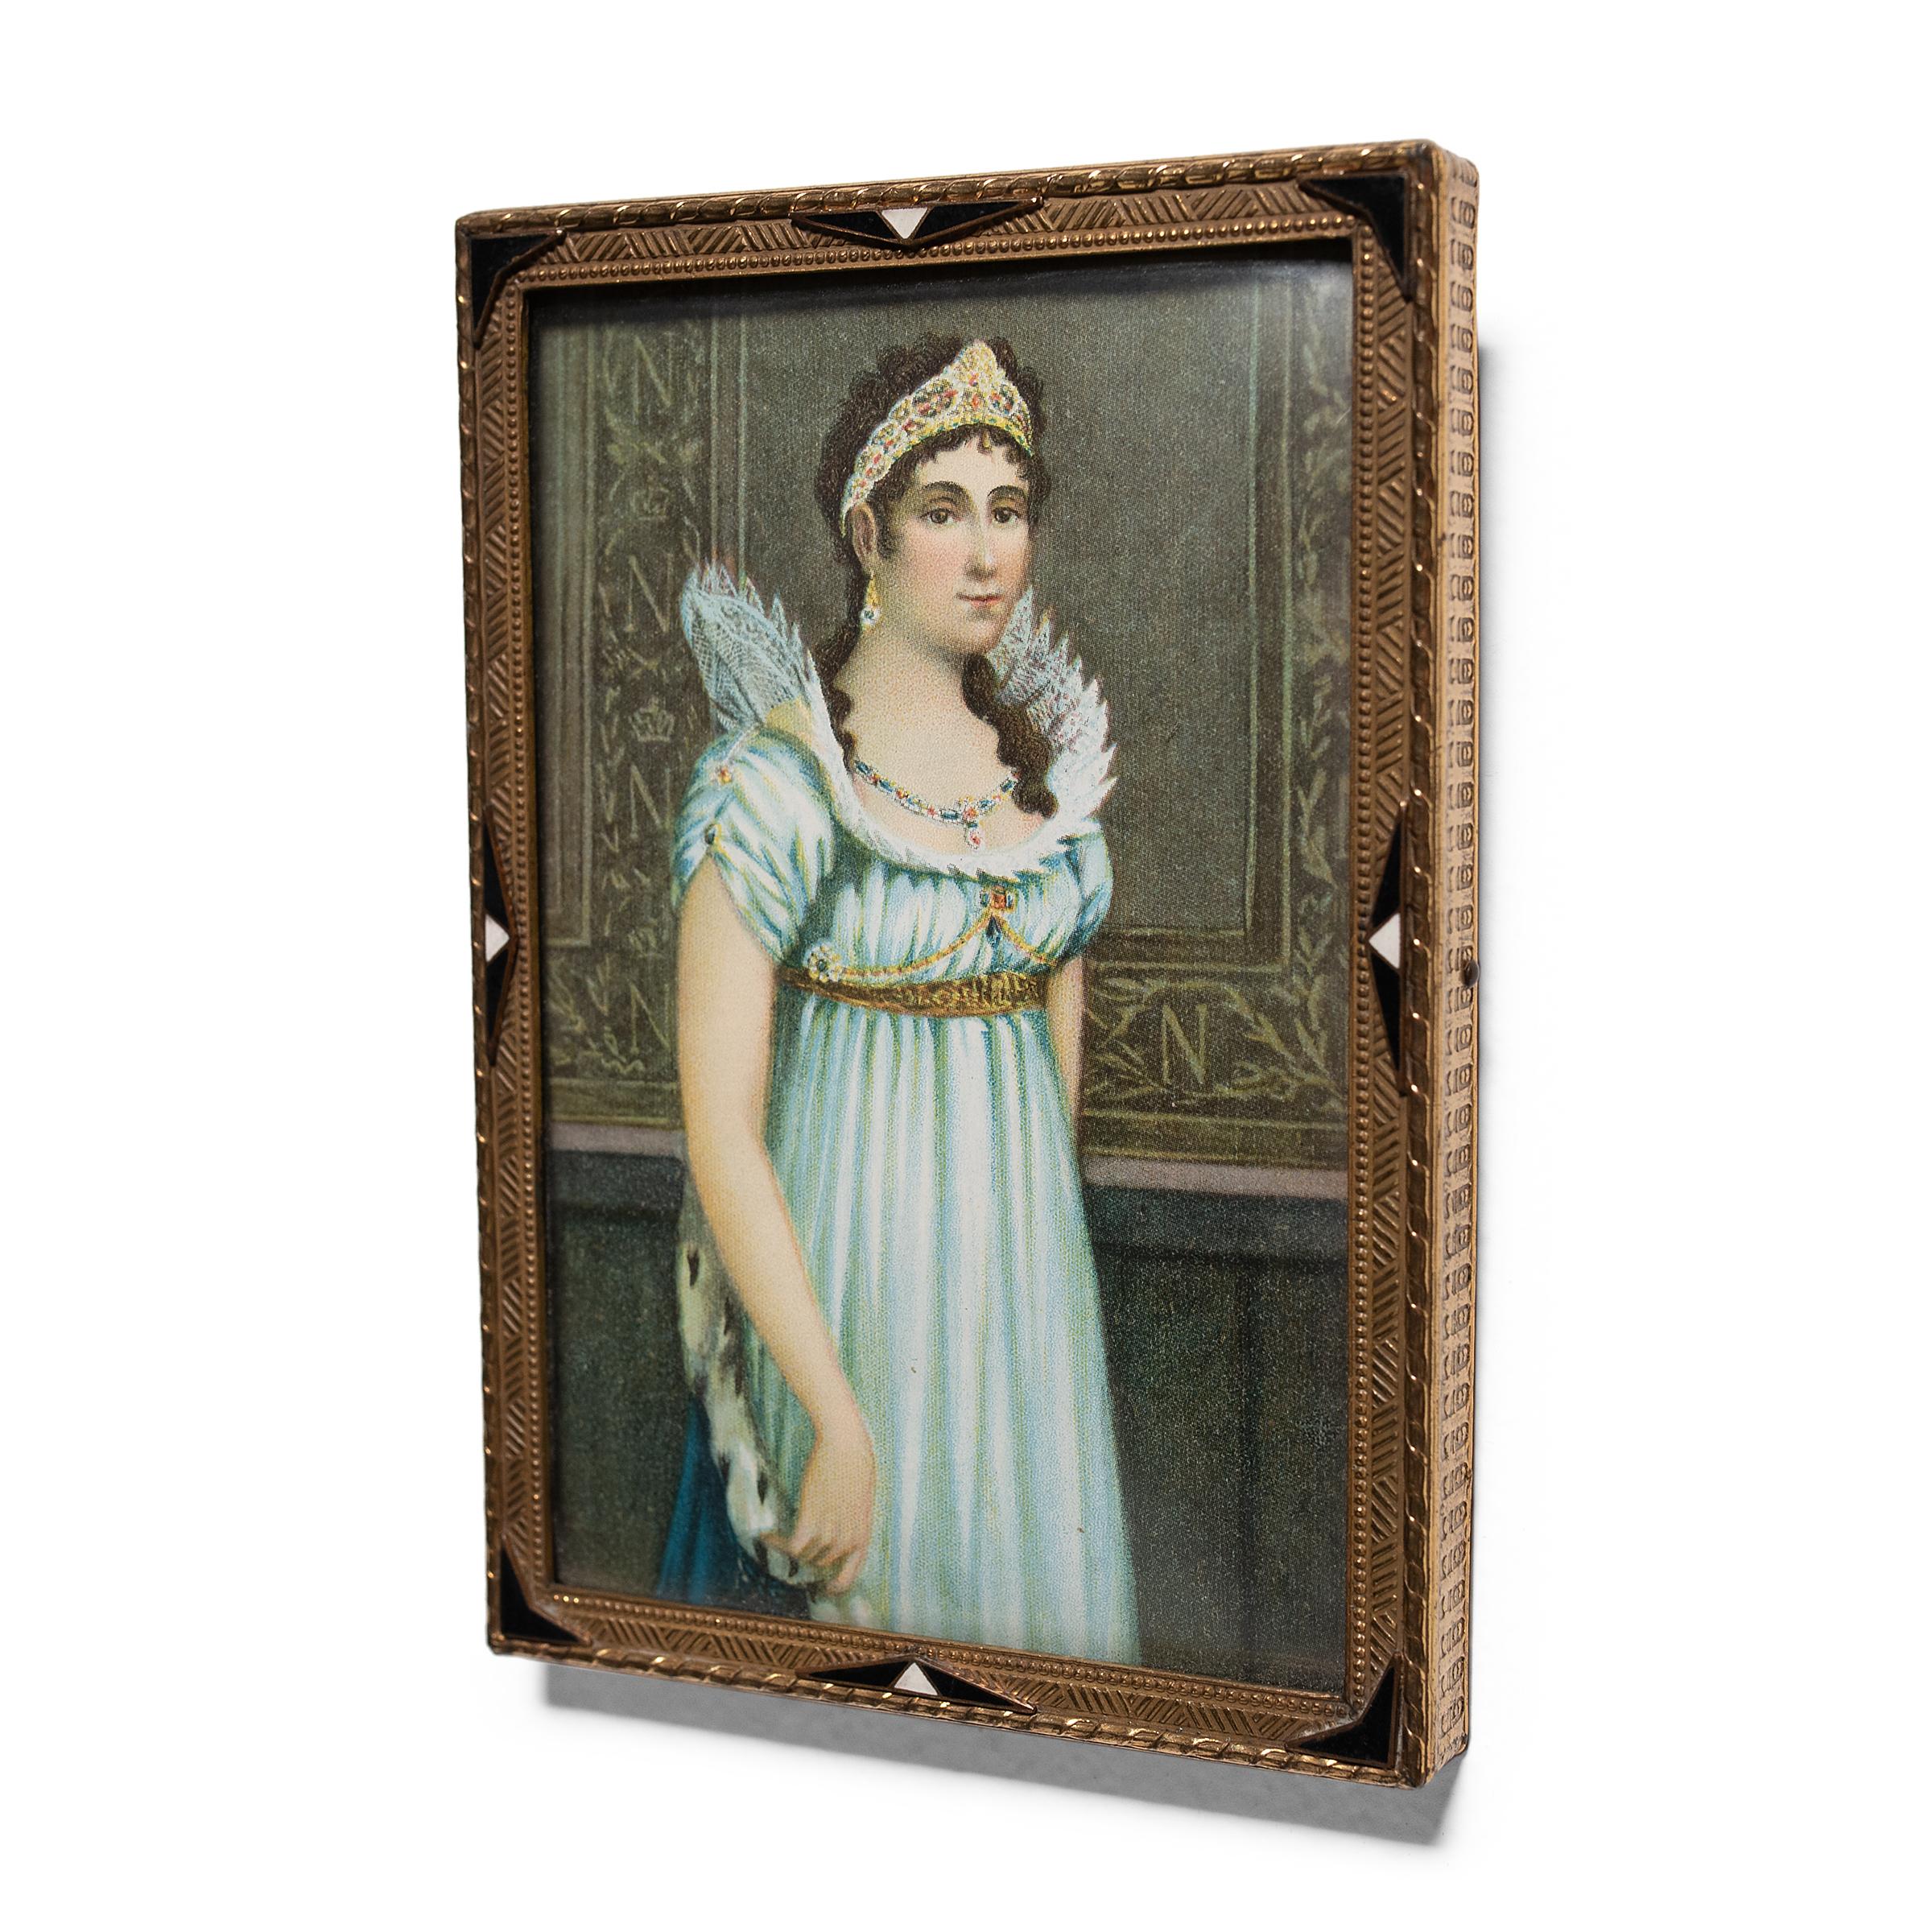 Dieses kleine gedruckte Porträt in einem geometrischen Art-Déco-Rahmen zeigt eine junge Frau des französischen Königshauses, wahrscheinlich Kaiserin Josephine Bonaparte. Josephine Bonaparte war als erste Ehefrau von Kaiser Napoleon Bonaparte